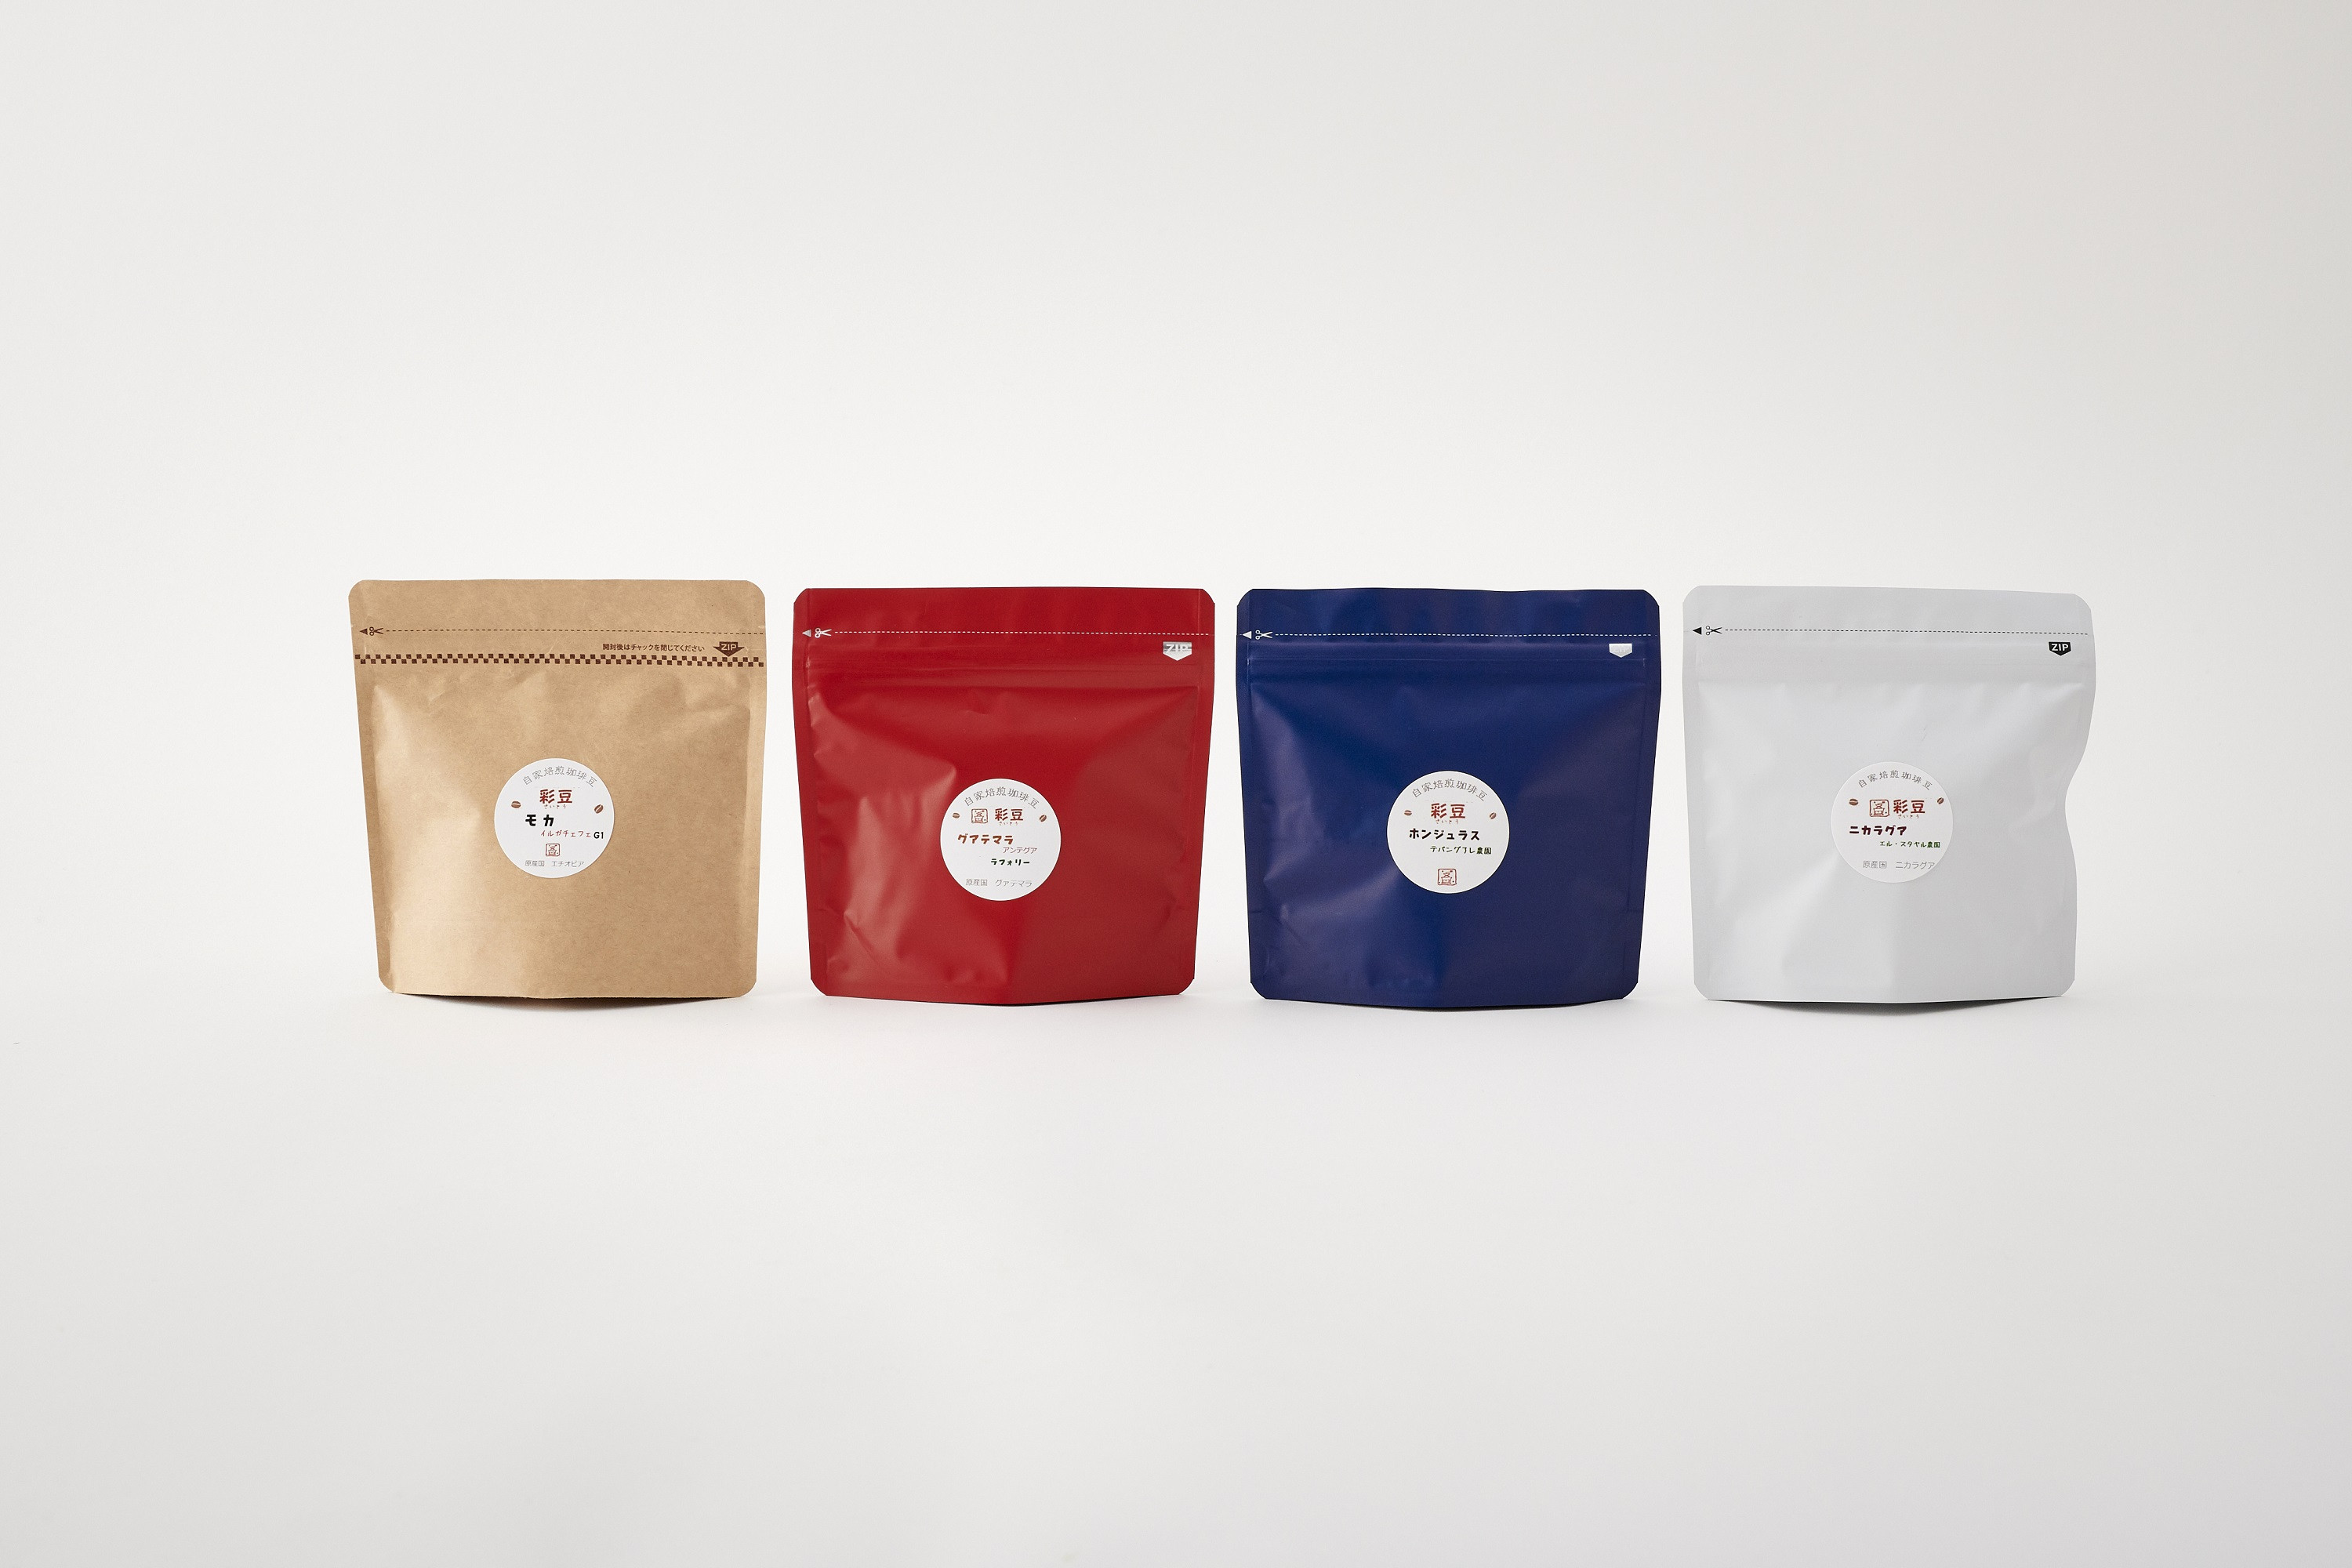 スペシャリティ自家焙煎コーヒー(粉) 深煎り 4種類詰め合わせ 400g(100g×4袋)